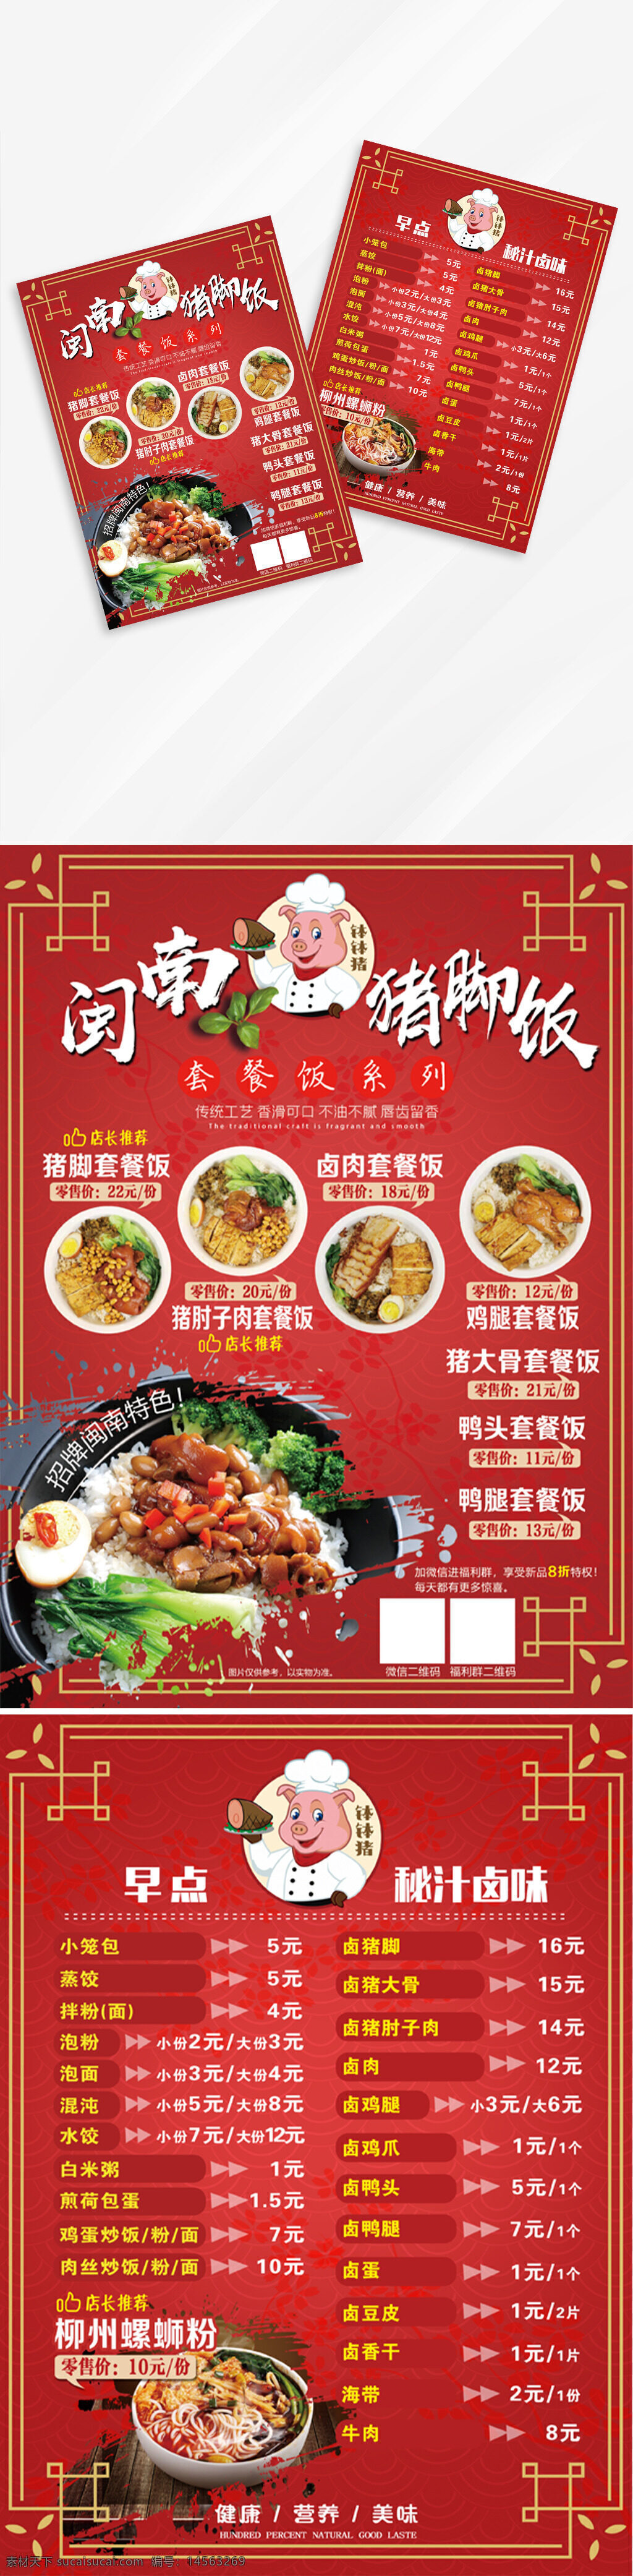 中式 中国红 快餐 餐饮 美食 早点 菜单 宣传单 猪脚饭 螺蛳粉